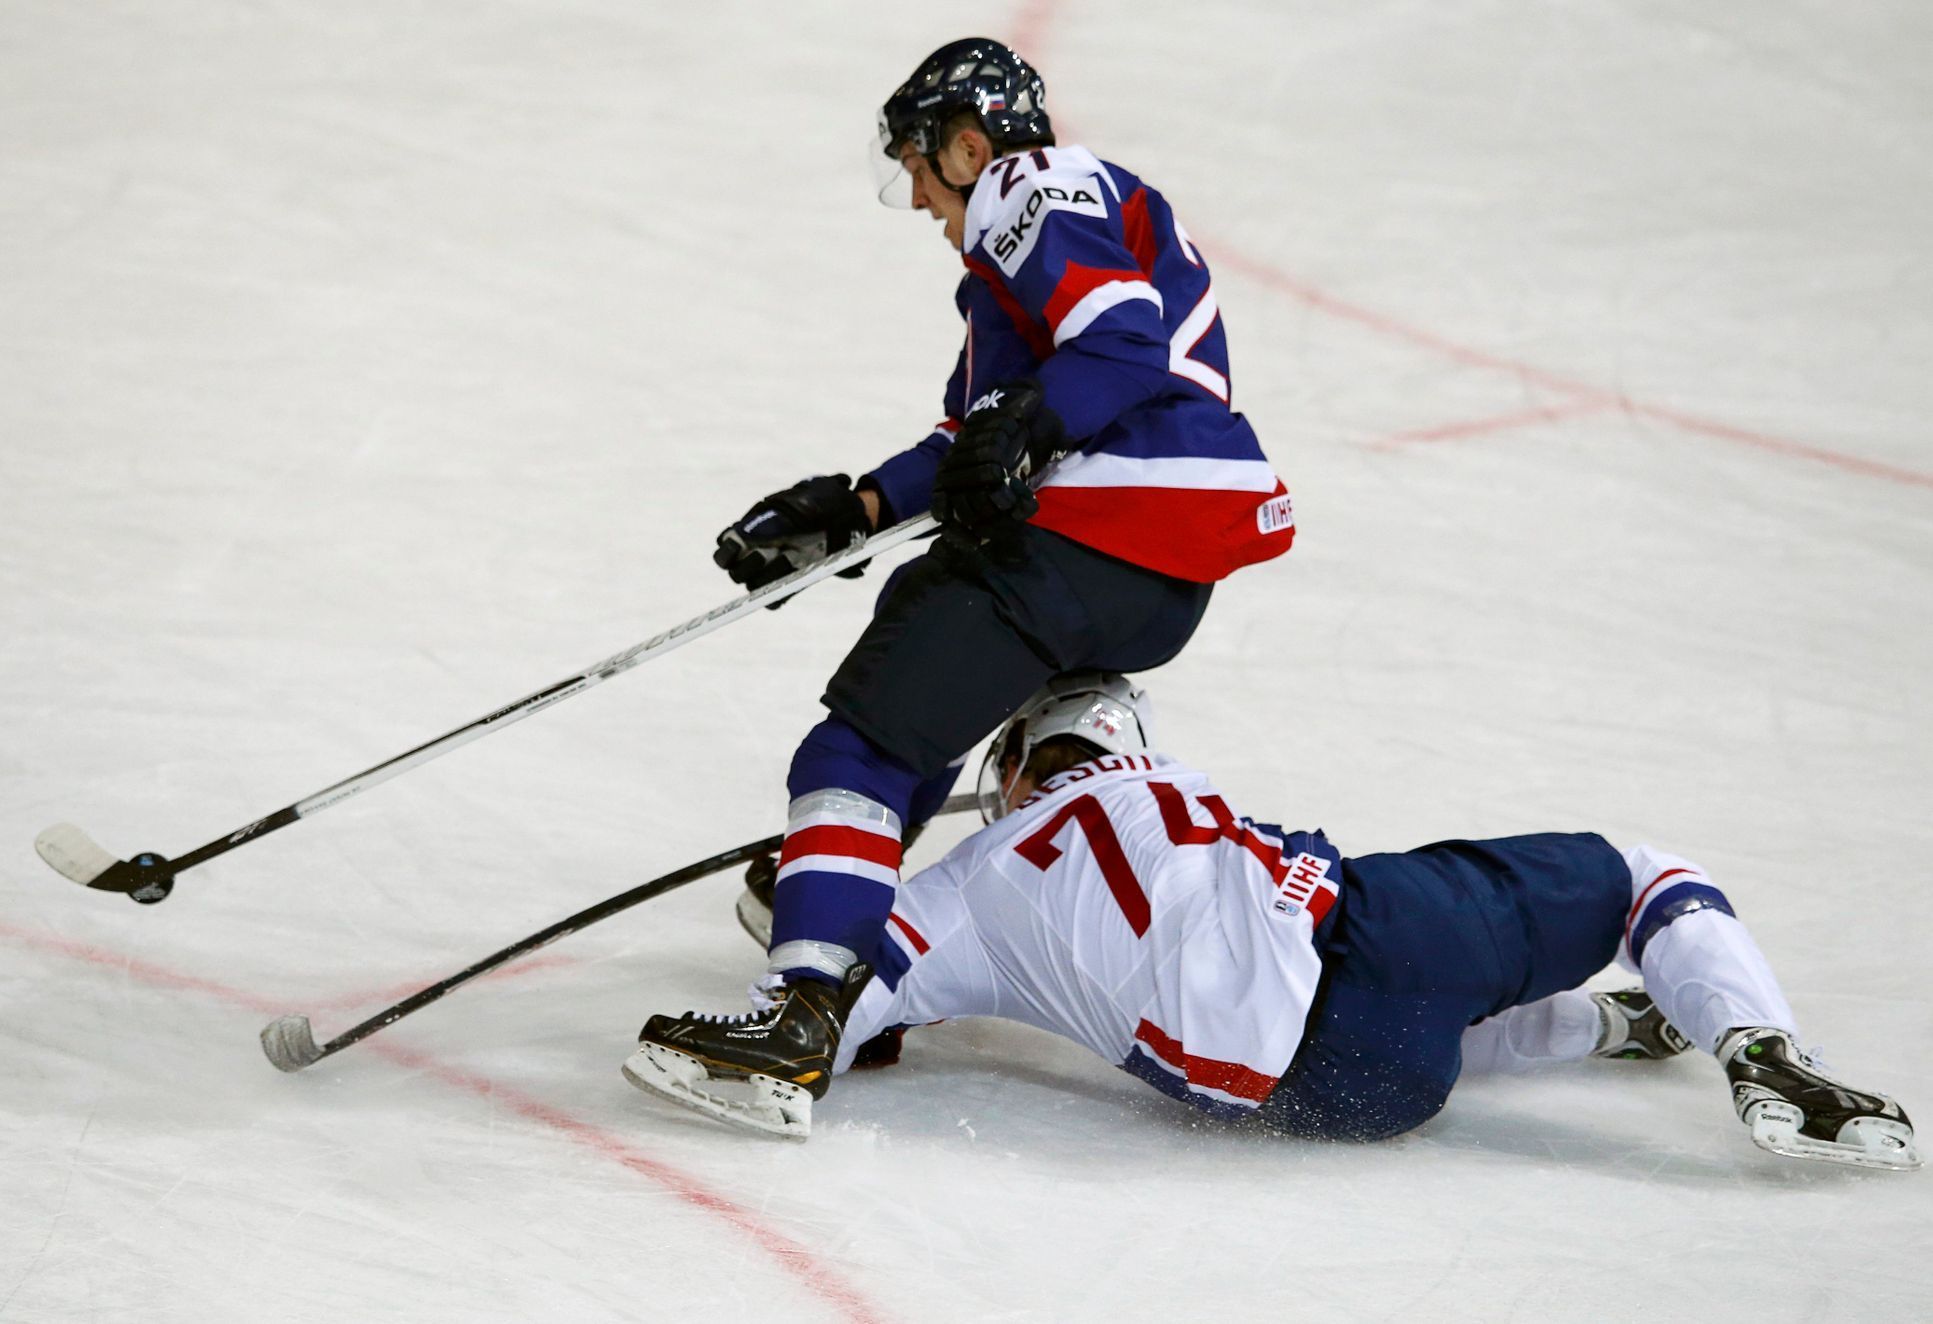 MS v hokeji 2013, Slovensko - Francie: Libor Hudáček - Nicolas Besch (na zemi)